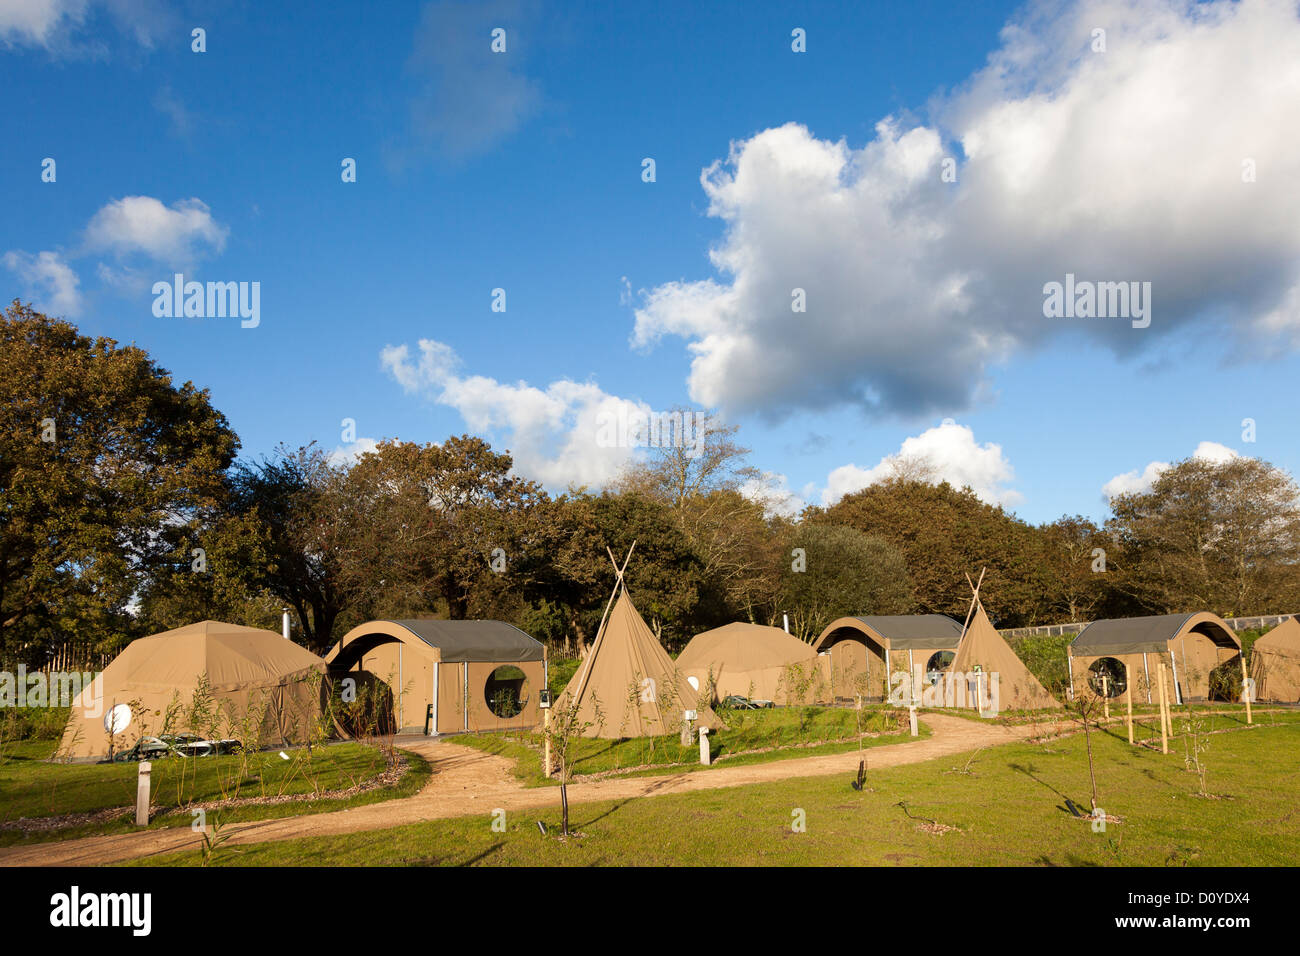 Las vainas de camping de lujo en Durrell Wildlife Park, Jersey, Islas del Canal, REINO UNIDO Foto de stock